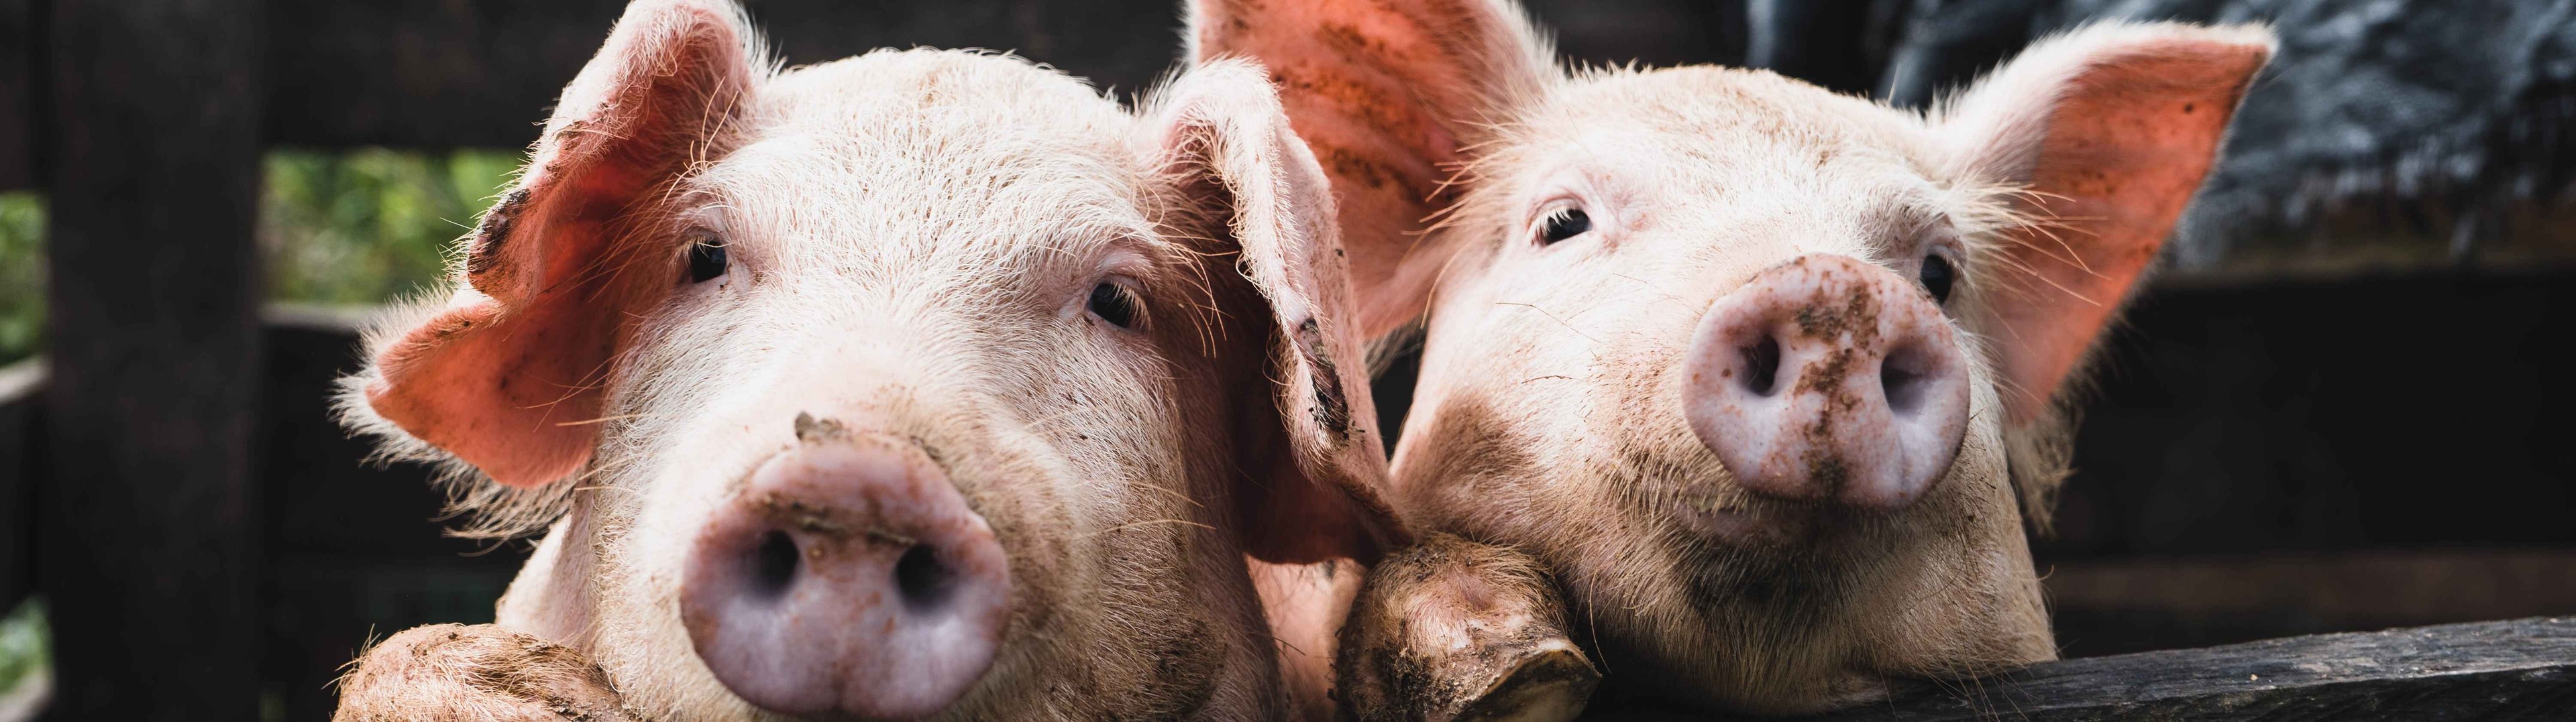 Reviven funciones de órganos de cerdos muertos con sangre artificial